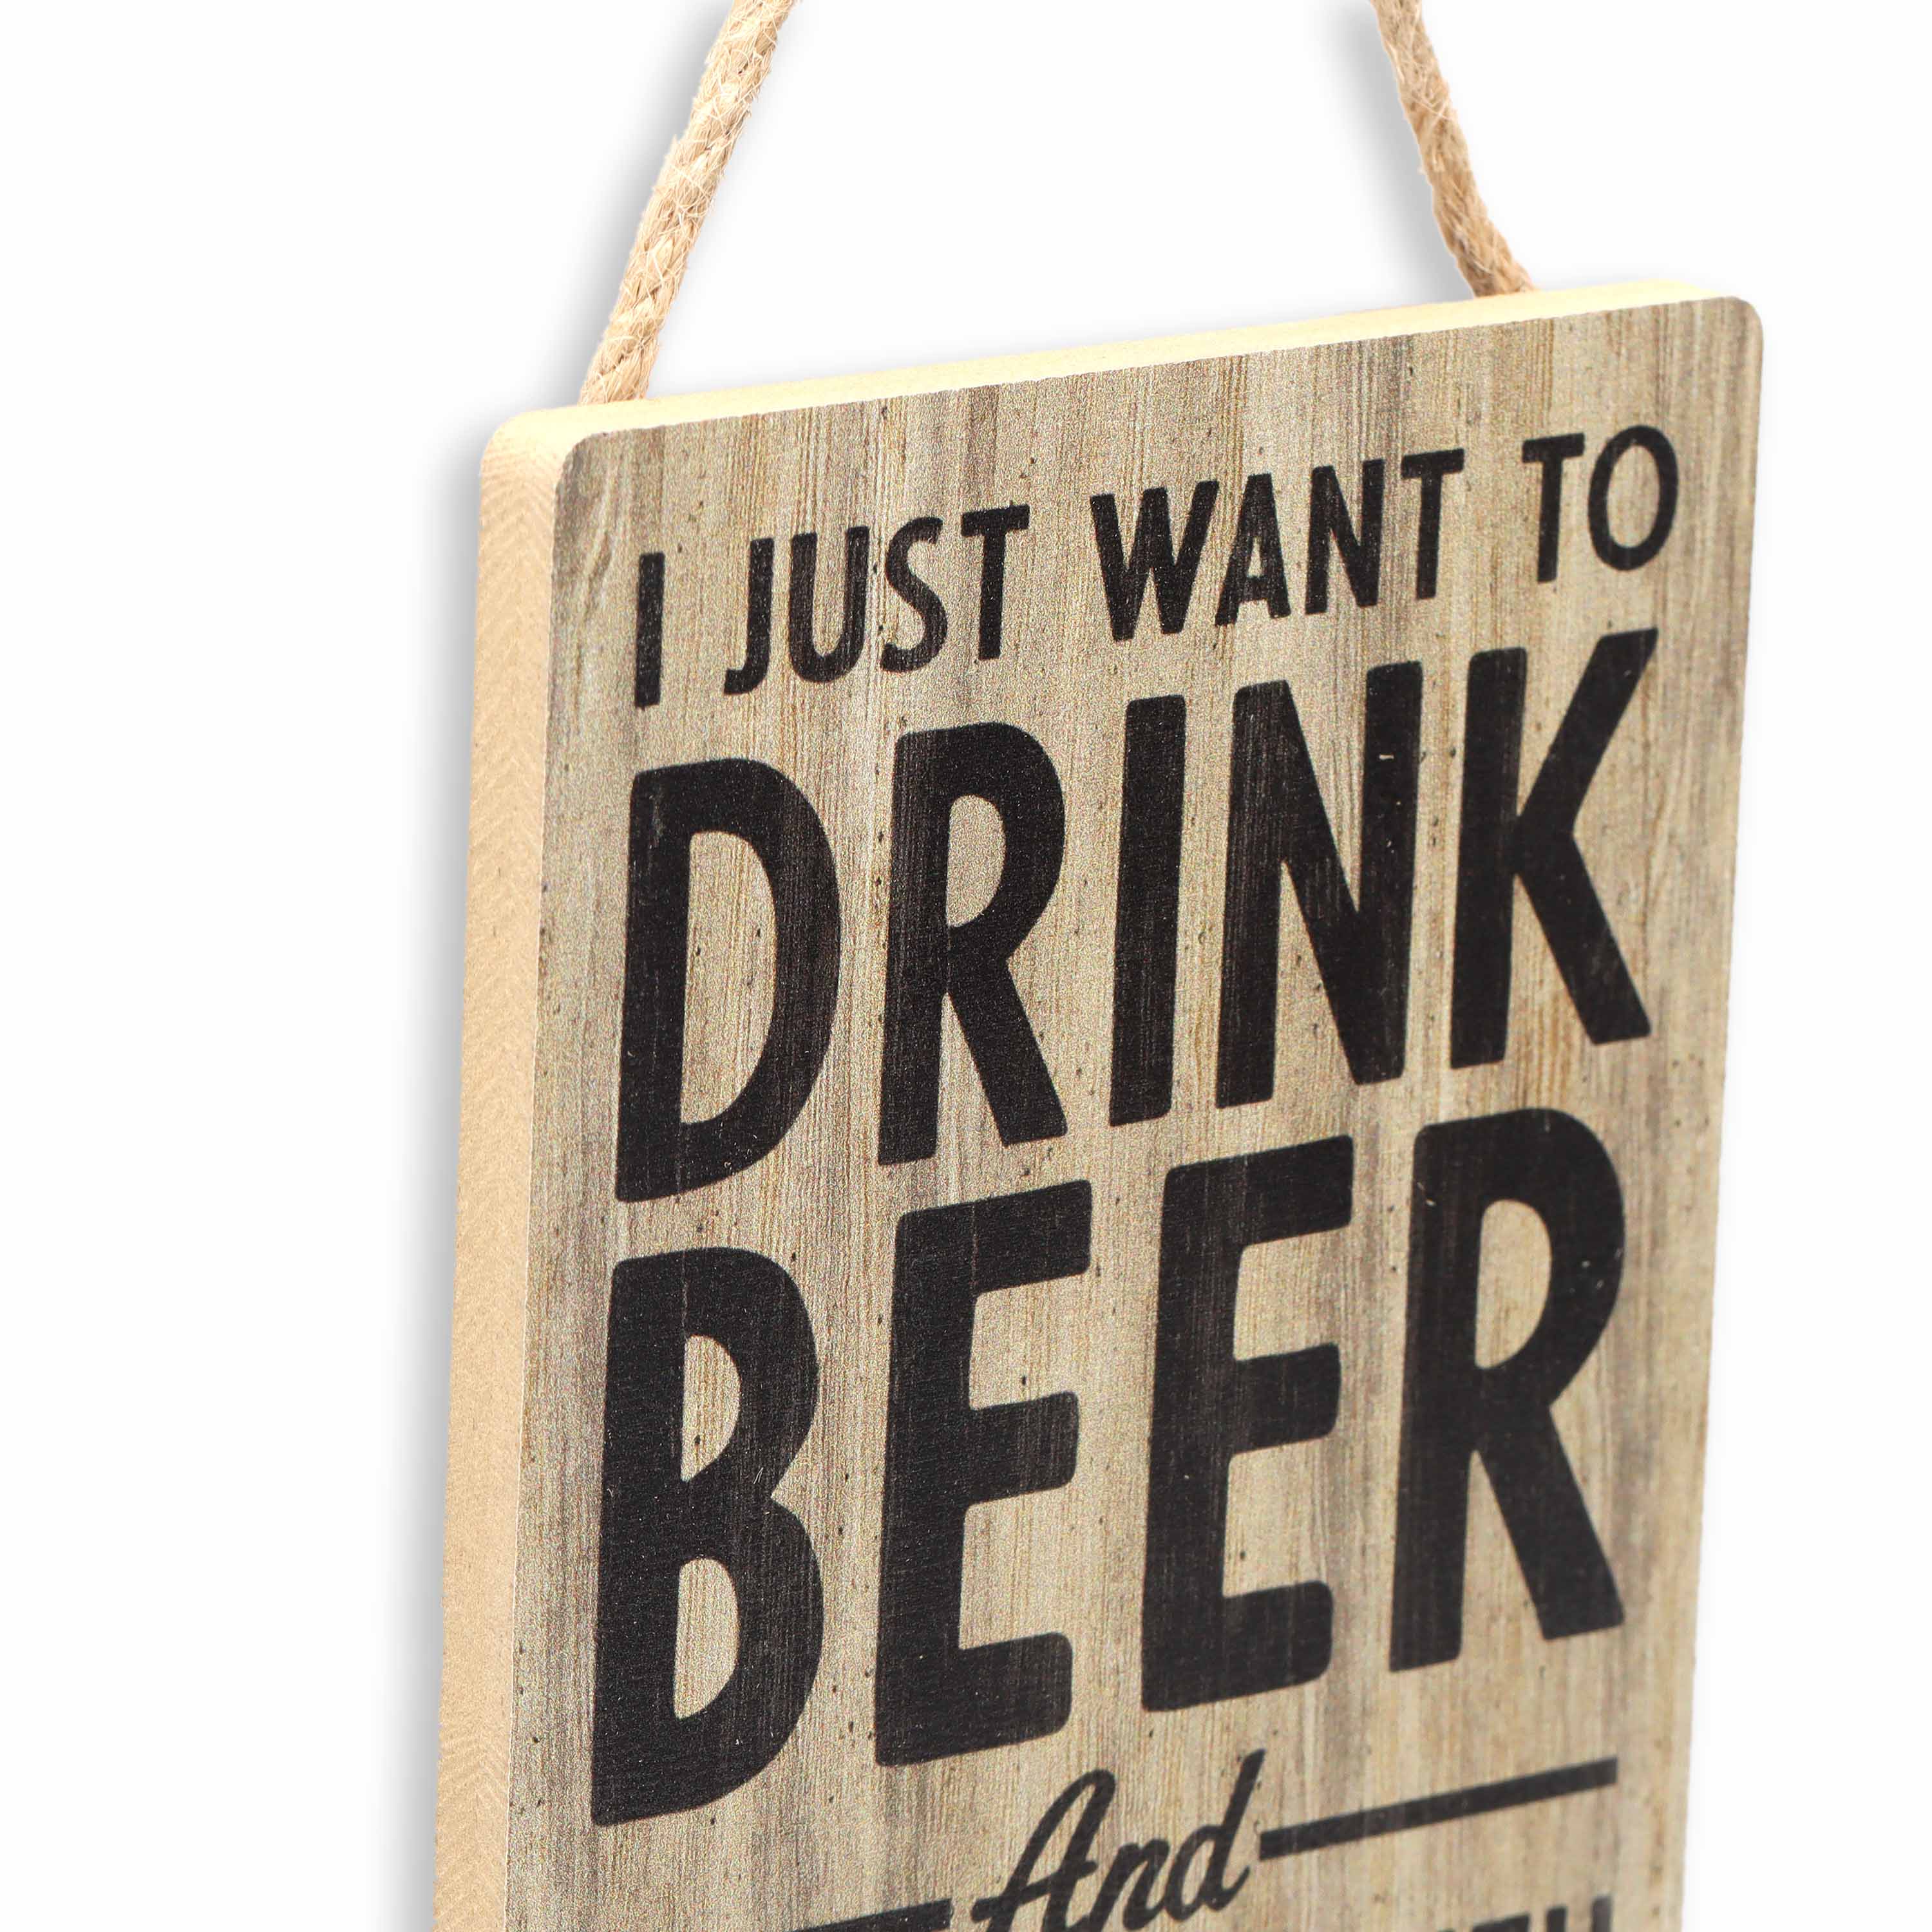 Open Road's Drink Beer Wood Sign